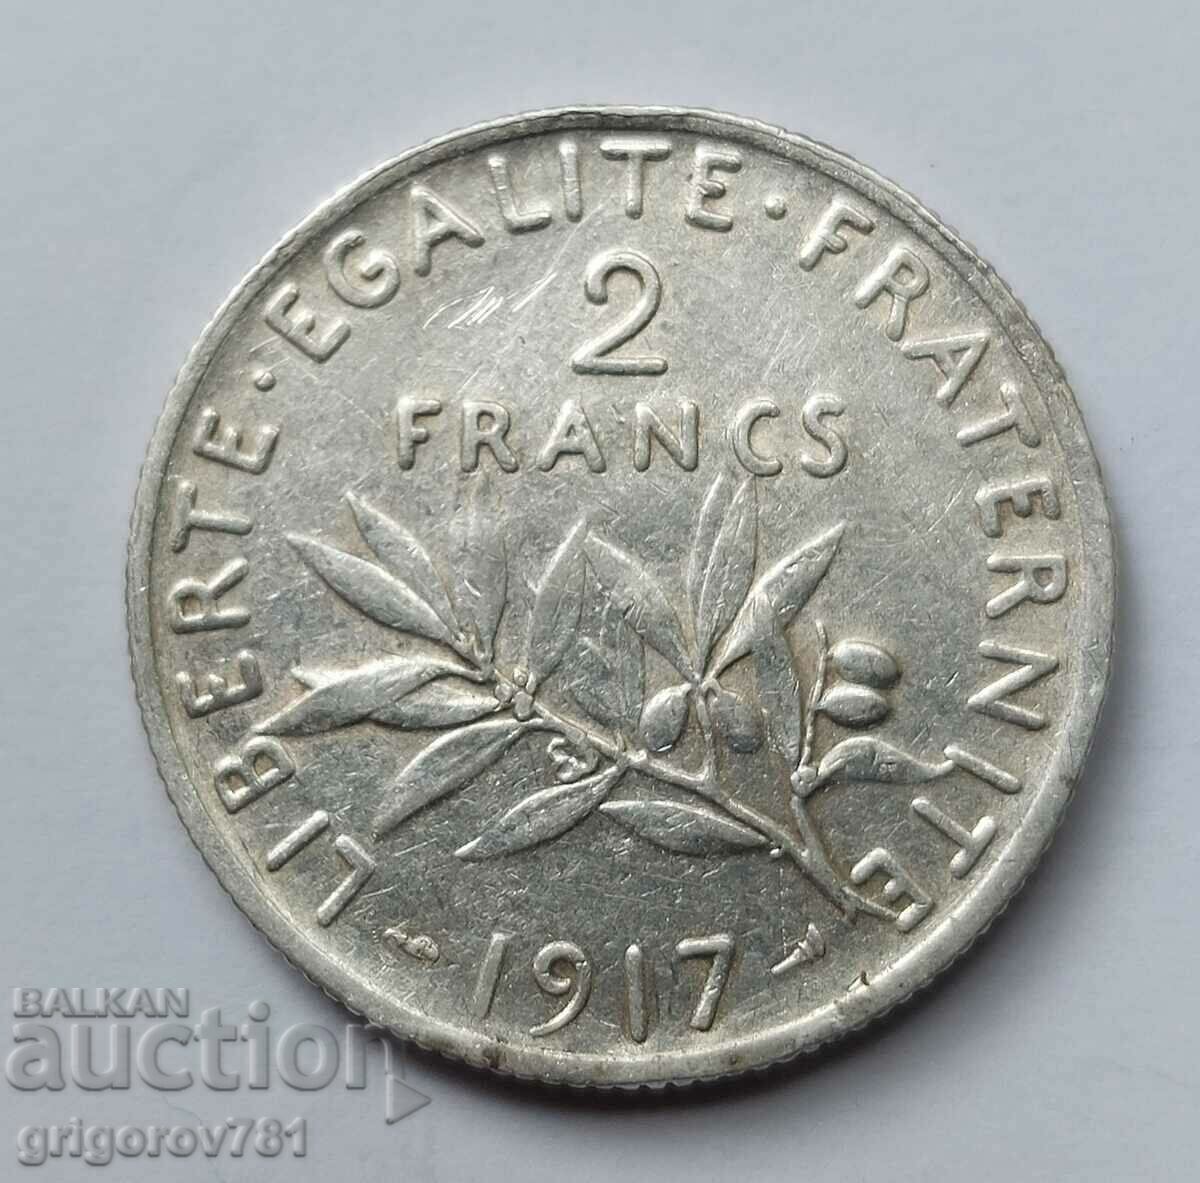 2 Franci Argint Franta 1917 - Moneda de argint #96